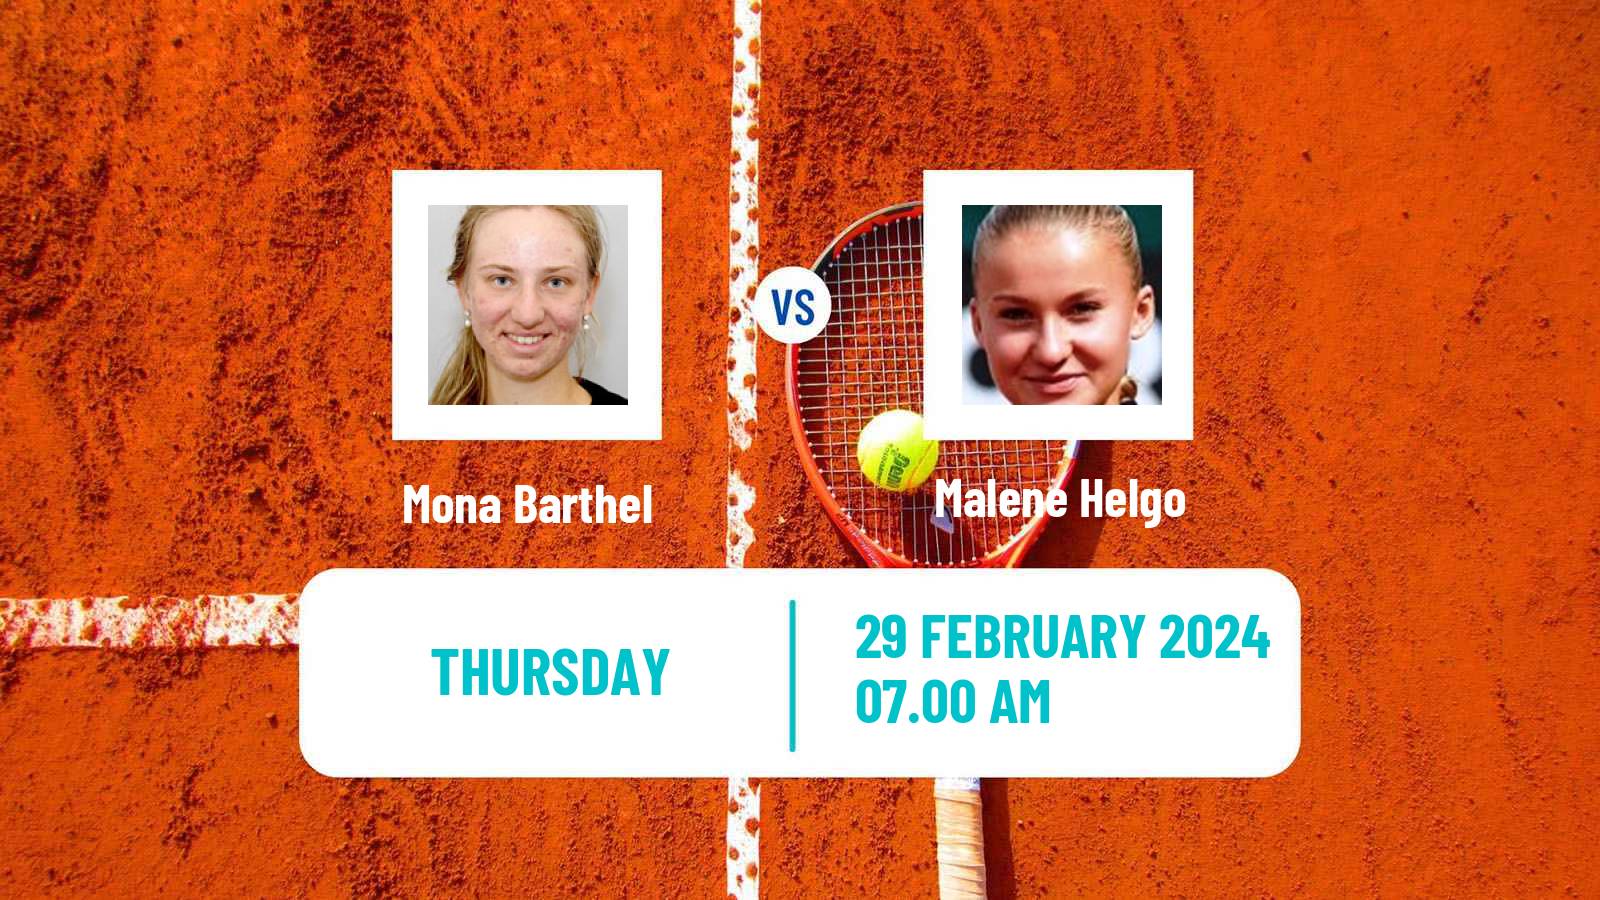 Tennis ITF W35 Helsinki Women Mona Barthel - Malene Helgo